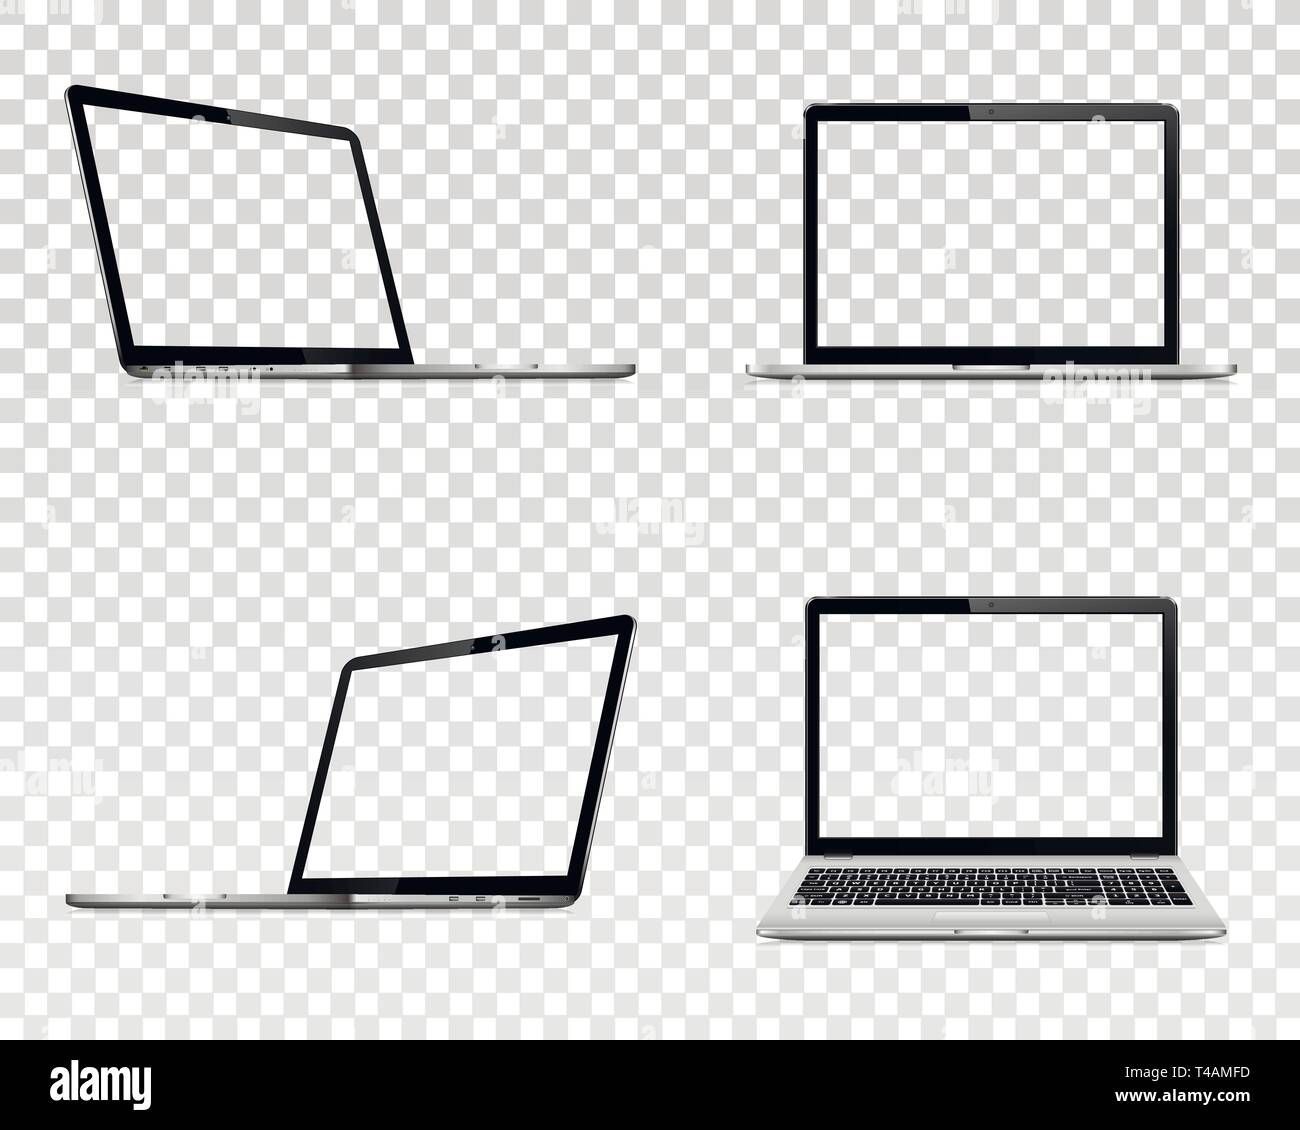 Der Laptop mit transparenten Bildschirm. Perspektive, Ansicht von vorne. Stock Vektor